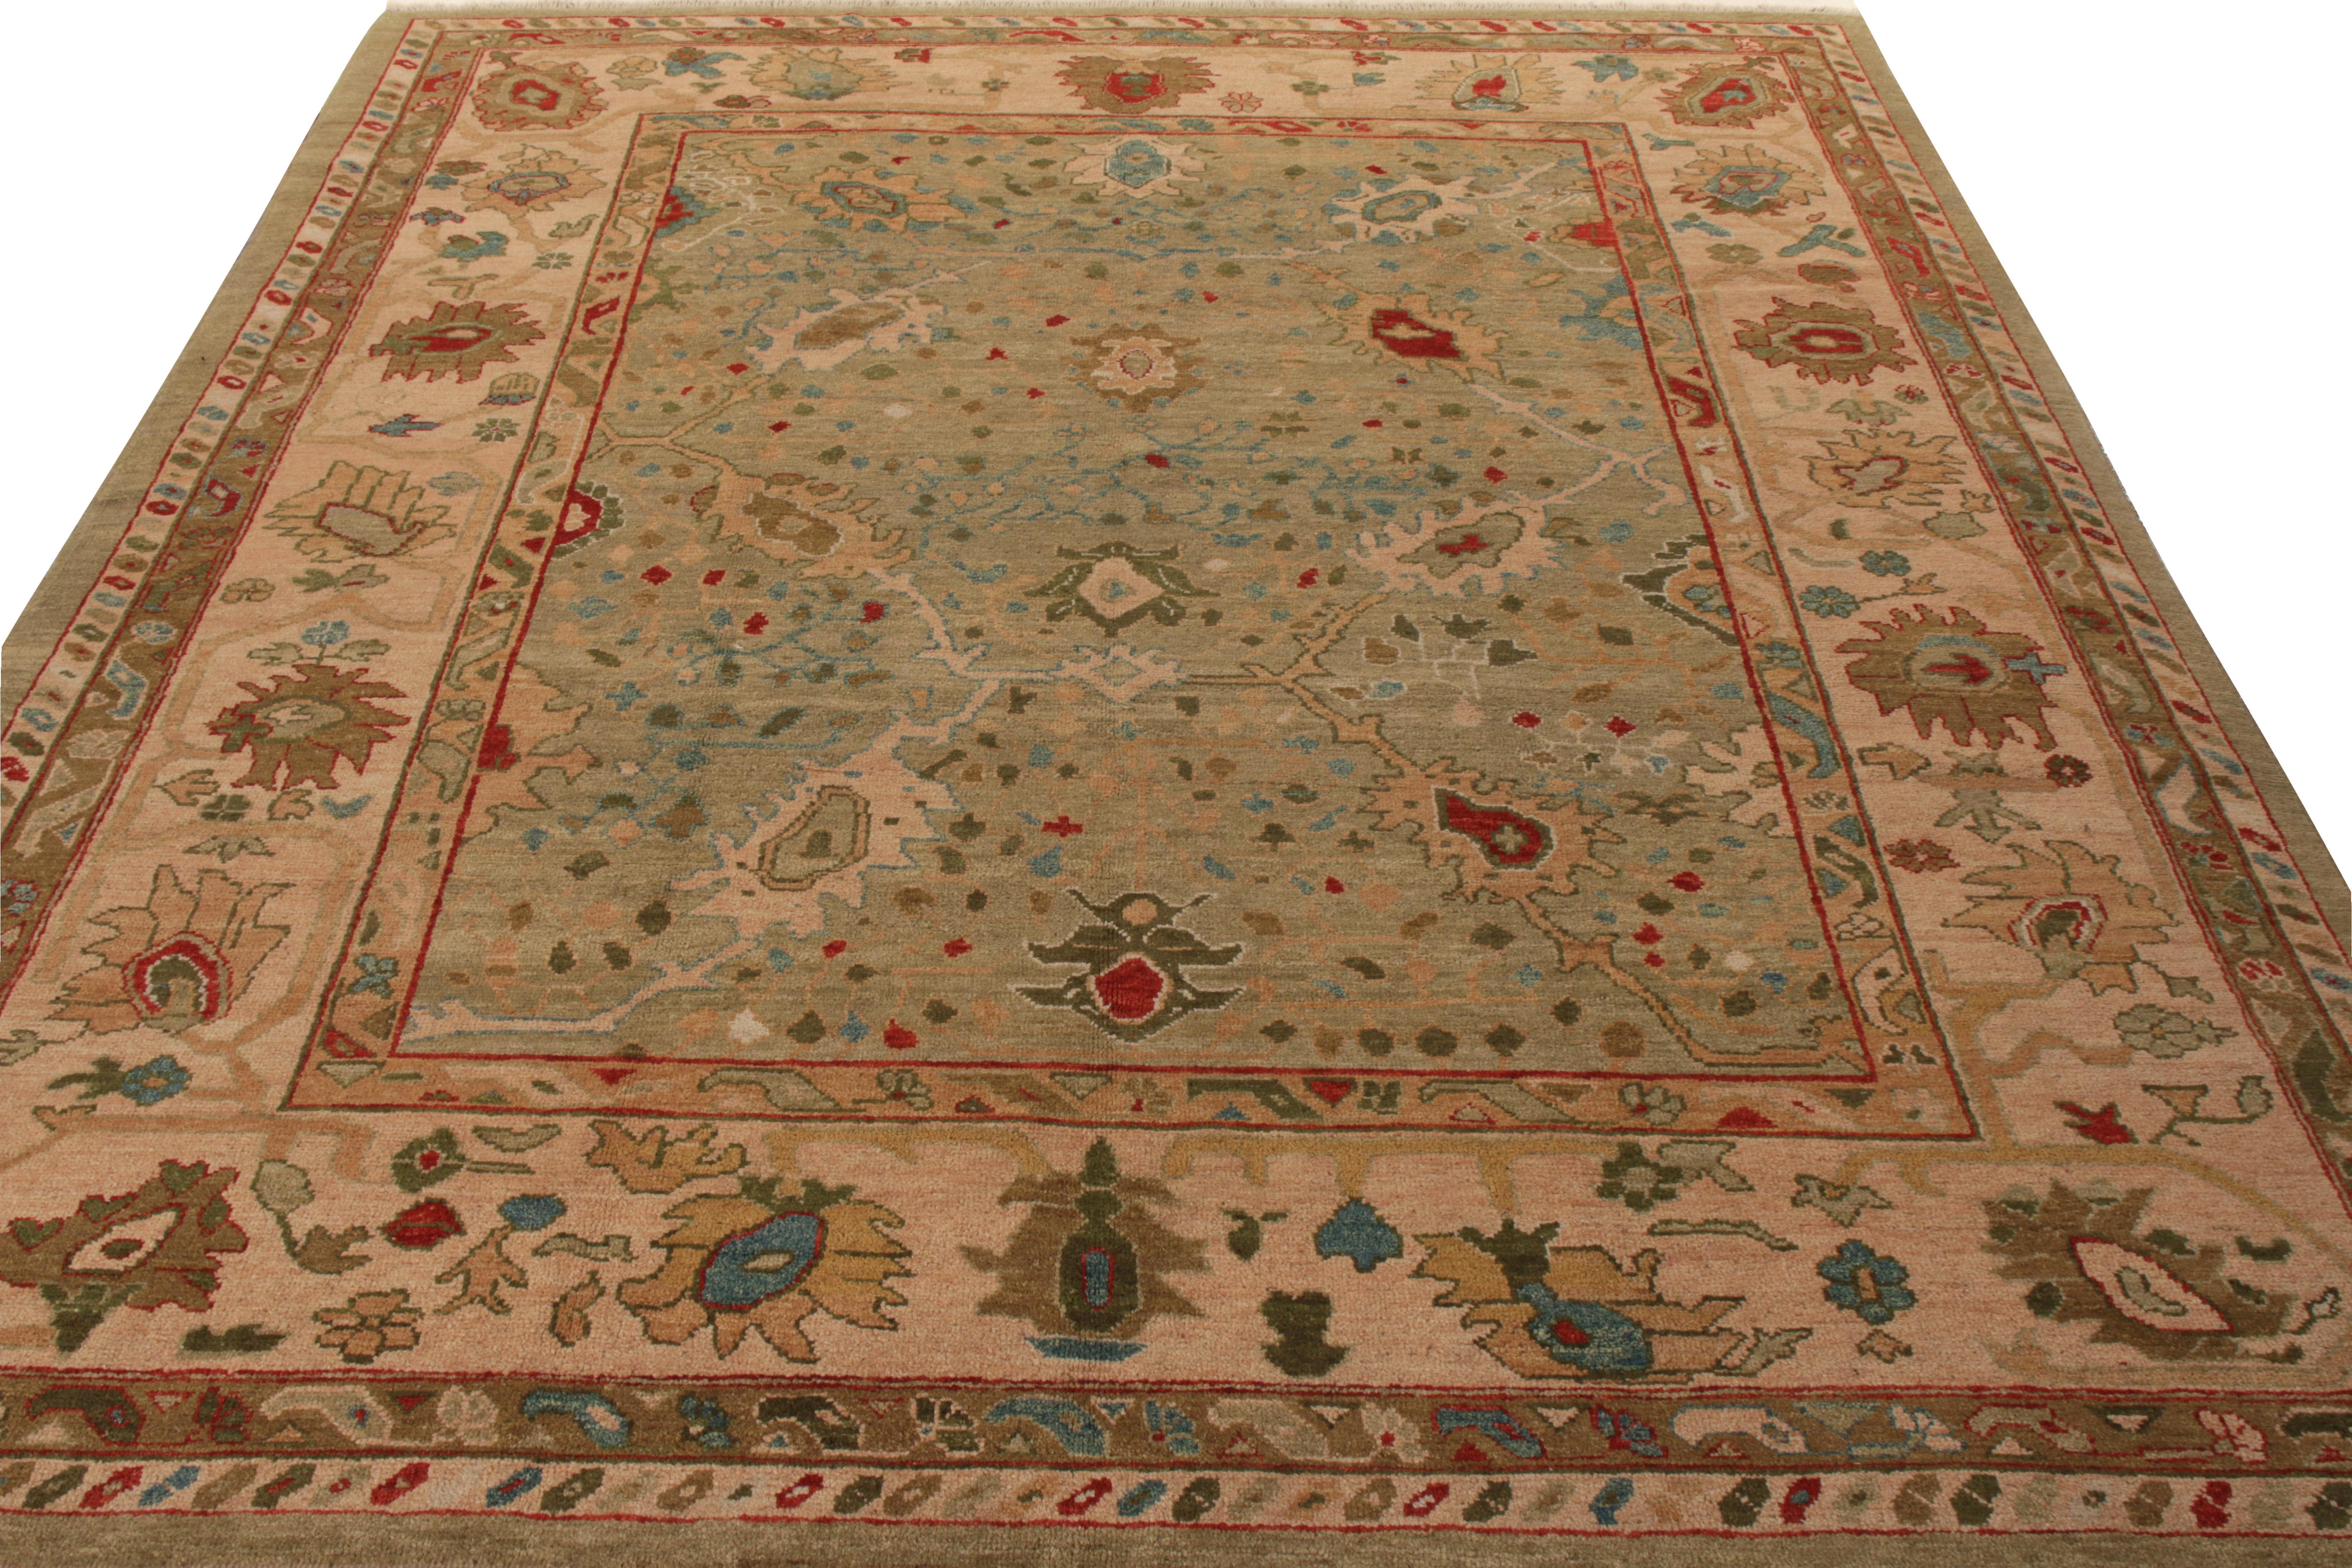 Un tapis turc vintage 9×10 de style Oushak de la Collection Modern Classics de Rug & Kilim.

Noué à la main en laine, ce tapis est un dessin impeccable des œuvres de George Ravmamovich, inspiré par les styles de tapis Oushak de transition. Il